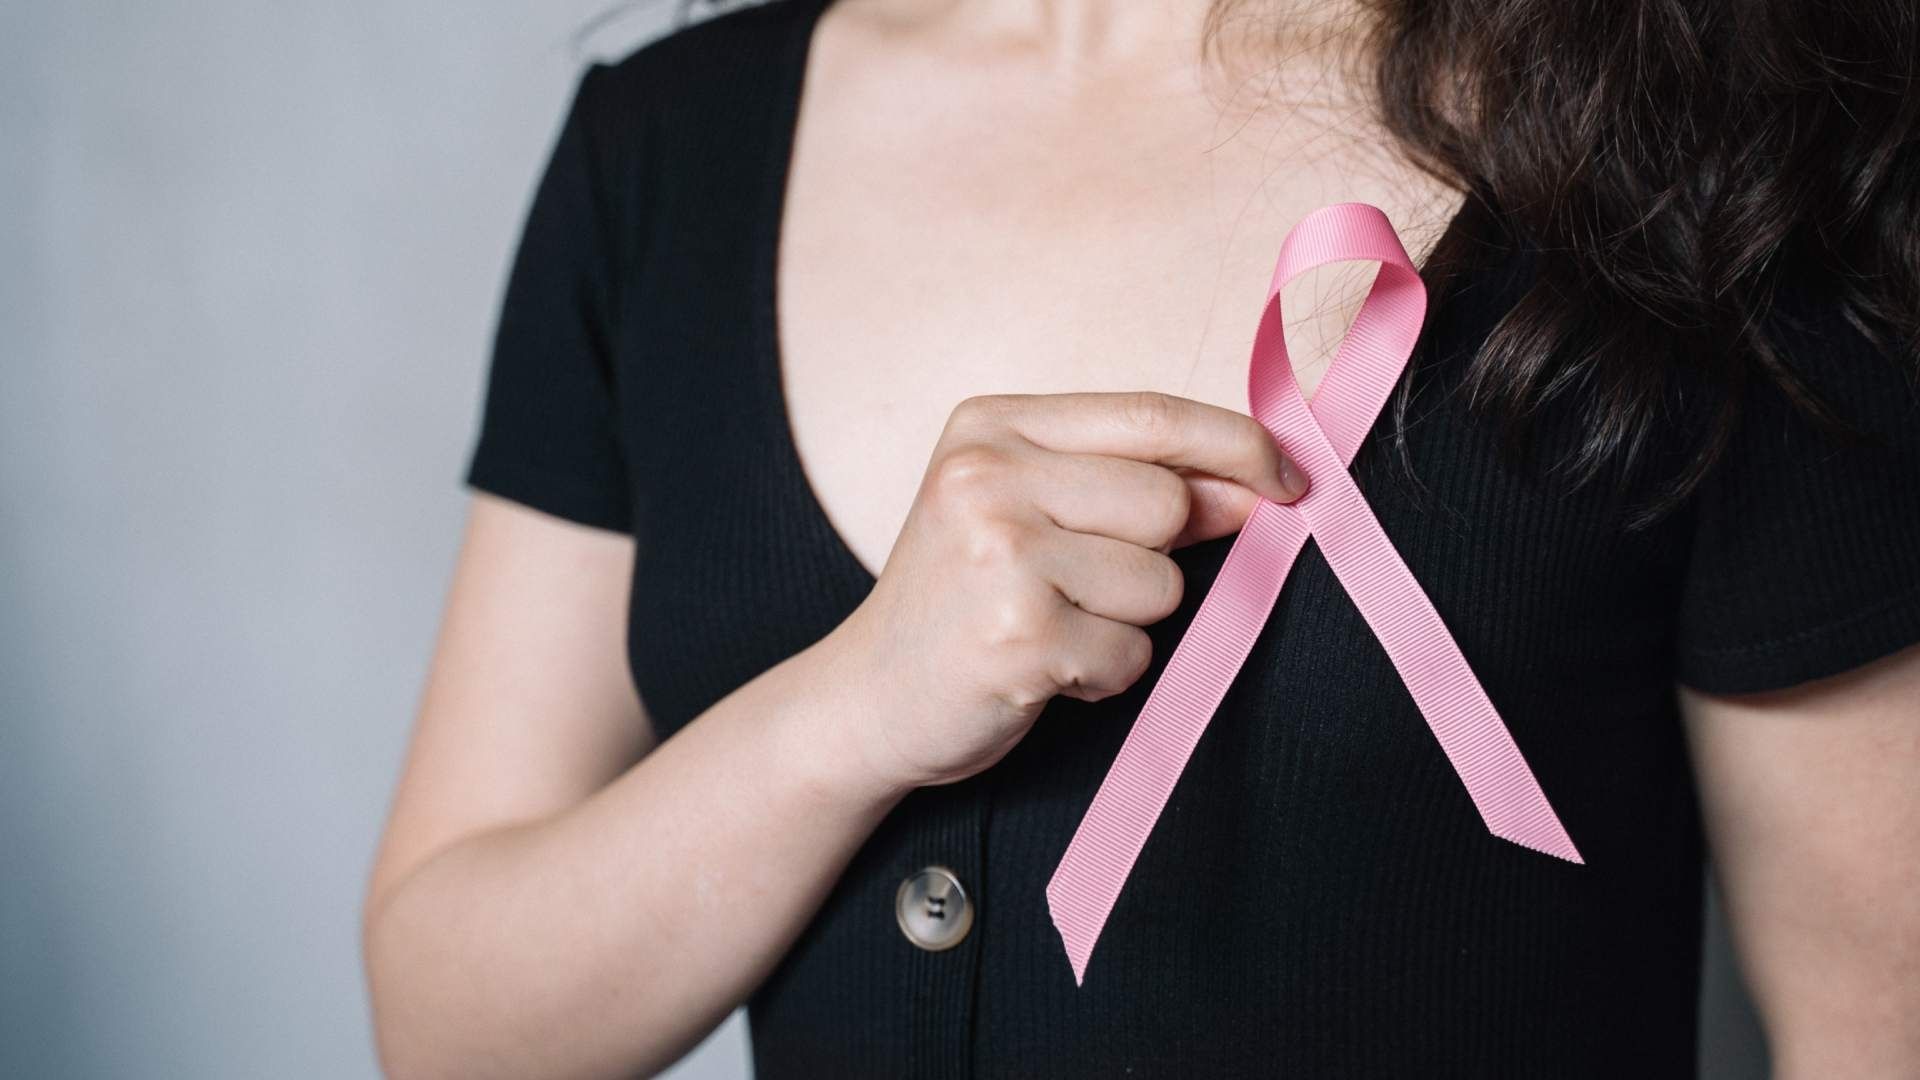 El aumento del riesgo de cáncer de mama ya era bien conocido para los métodos anticonceptivos que combinan progestágeno y estrógeno